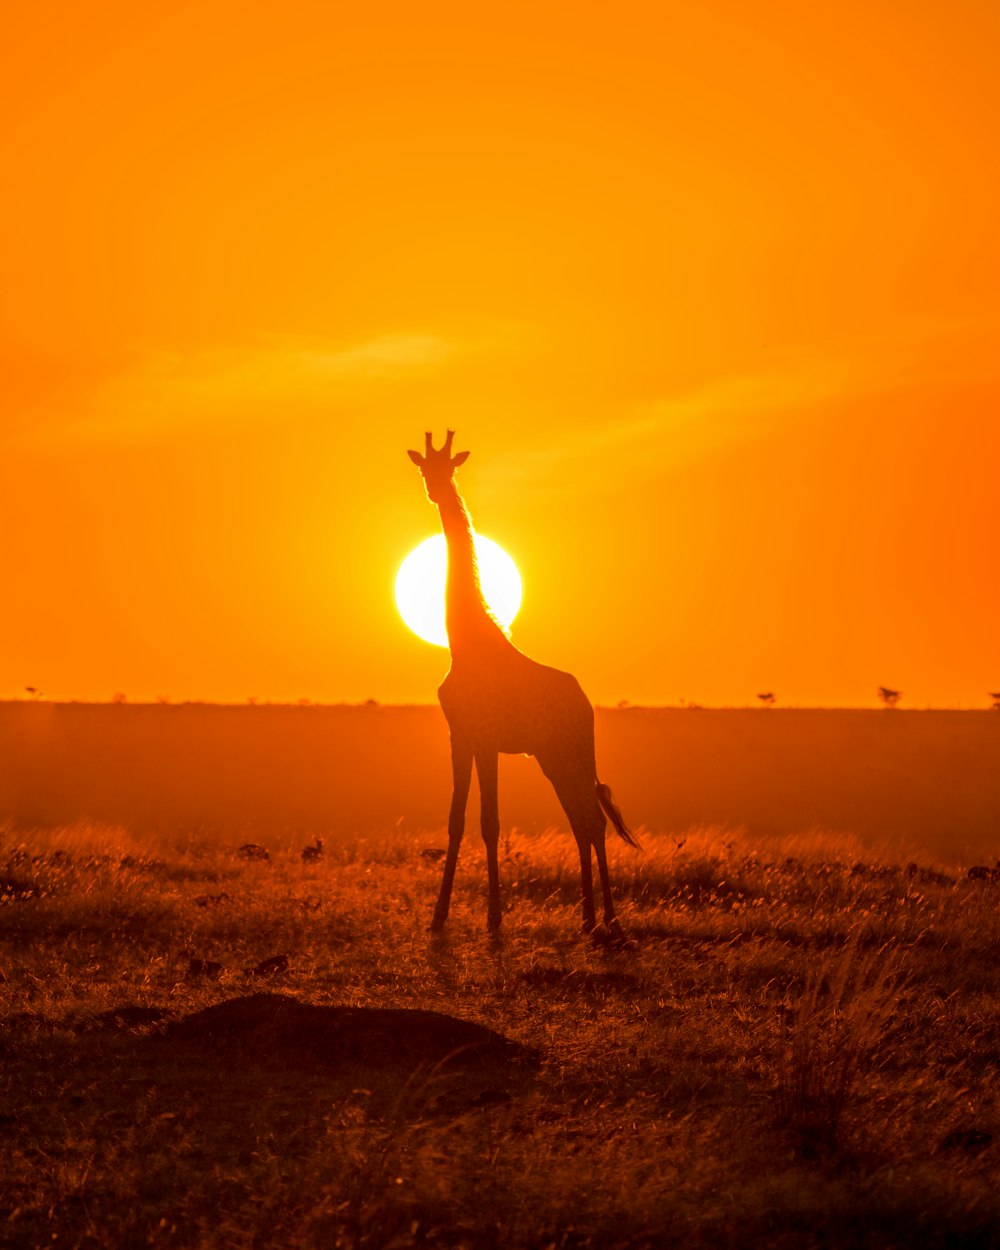 Silueta de jirafa en campo marrón durante la puesta de sol